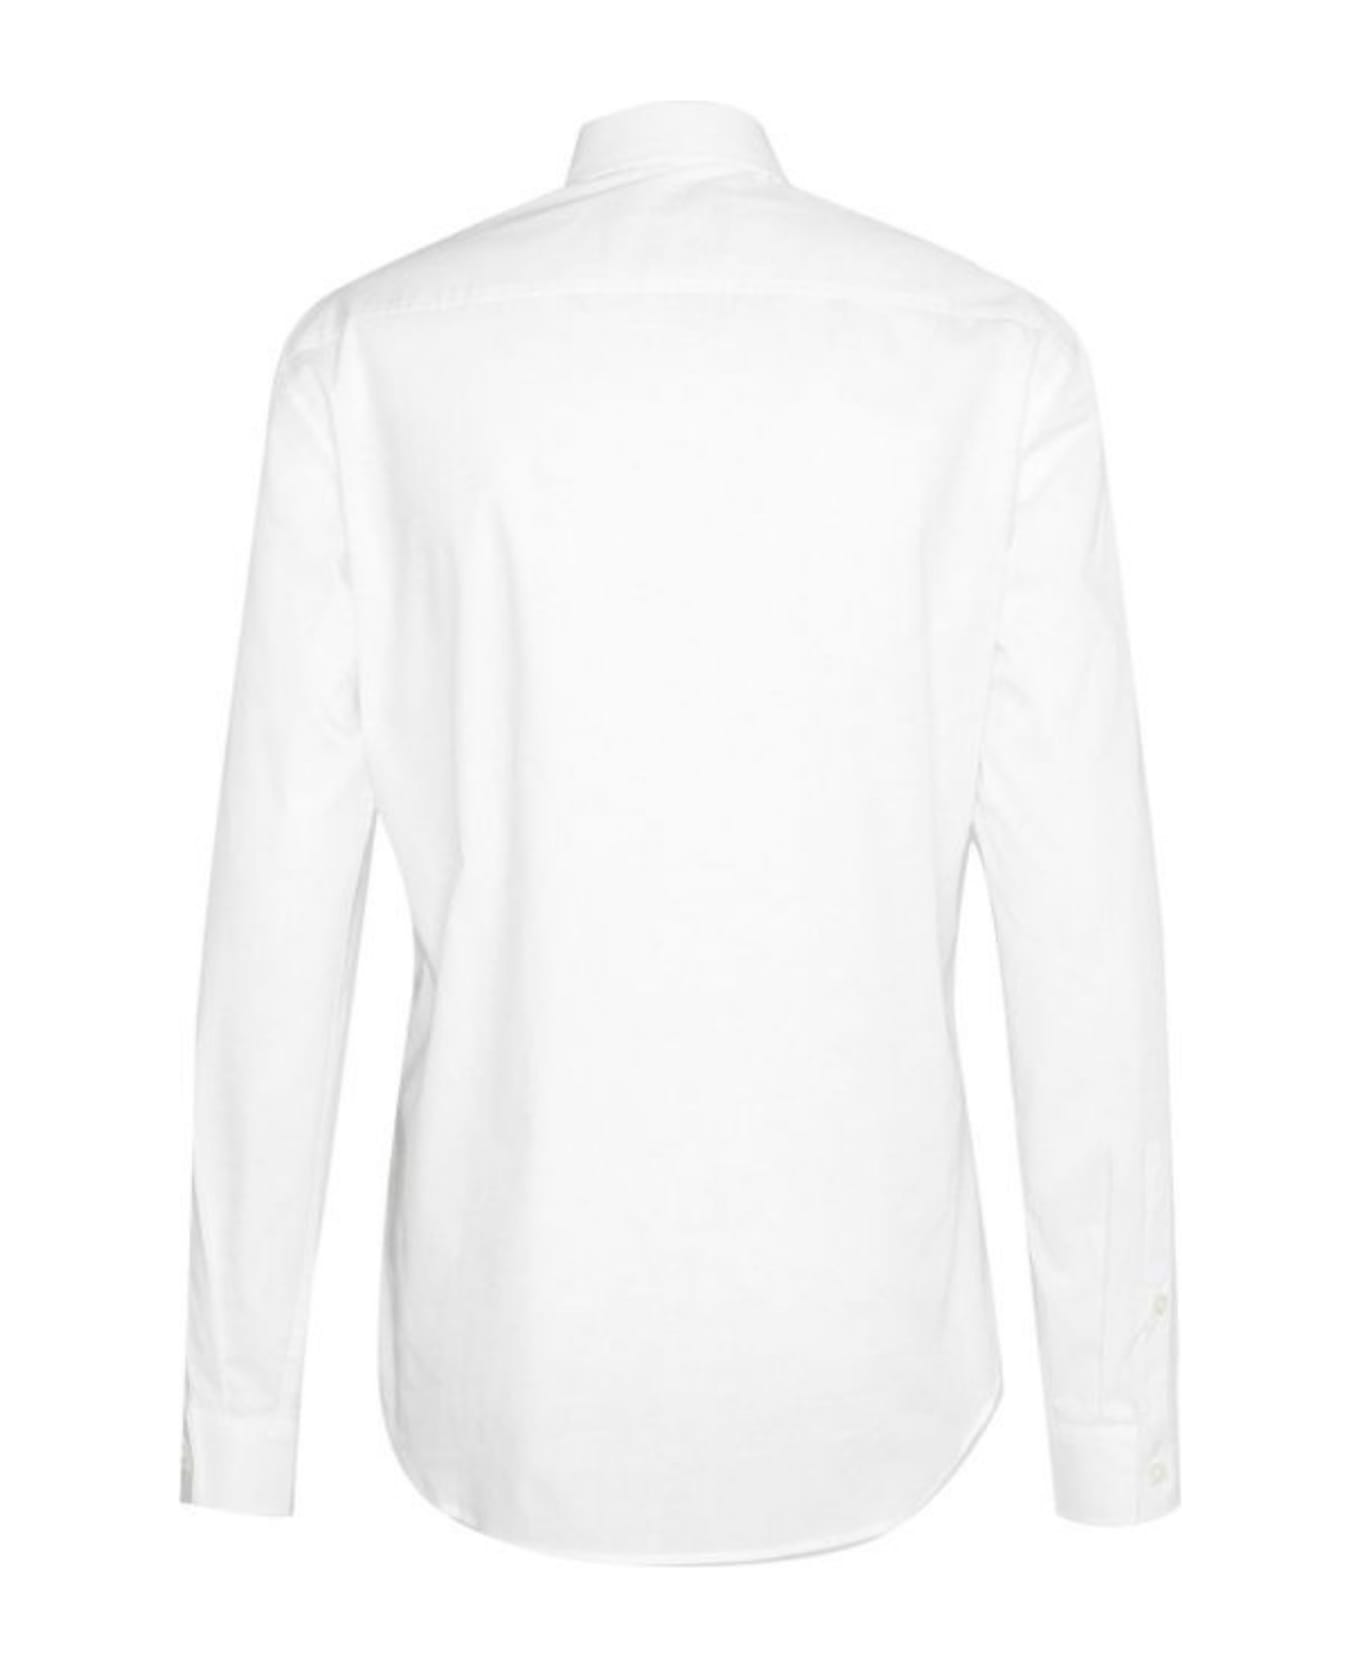 Just Cavalli Shirts White - White シャツ